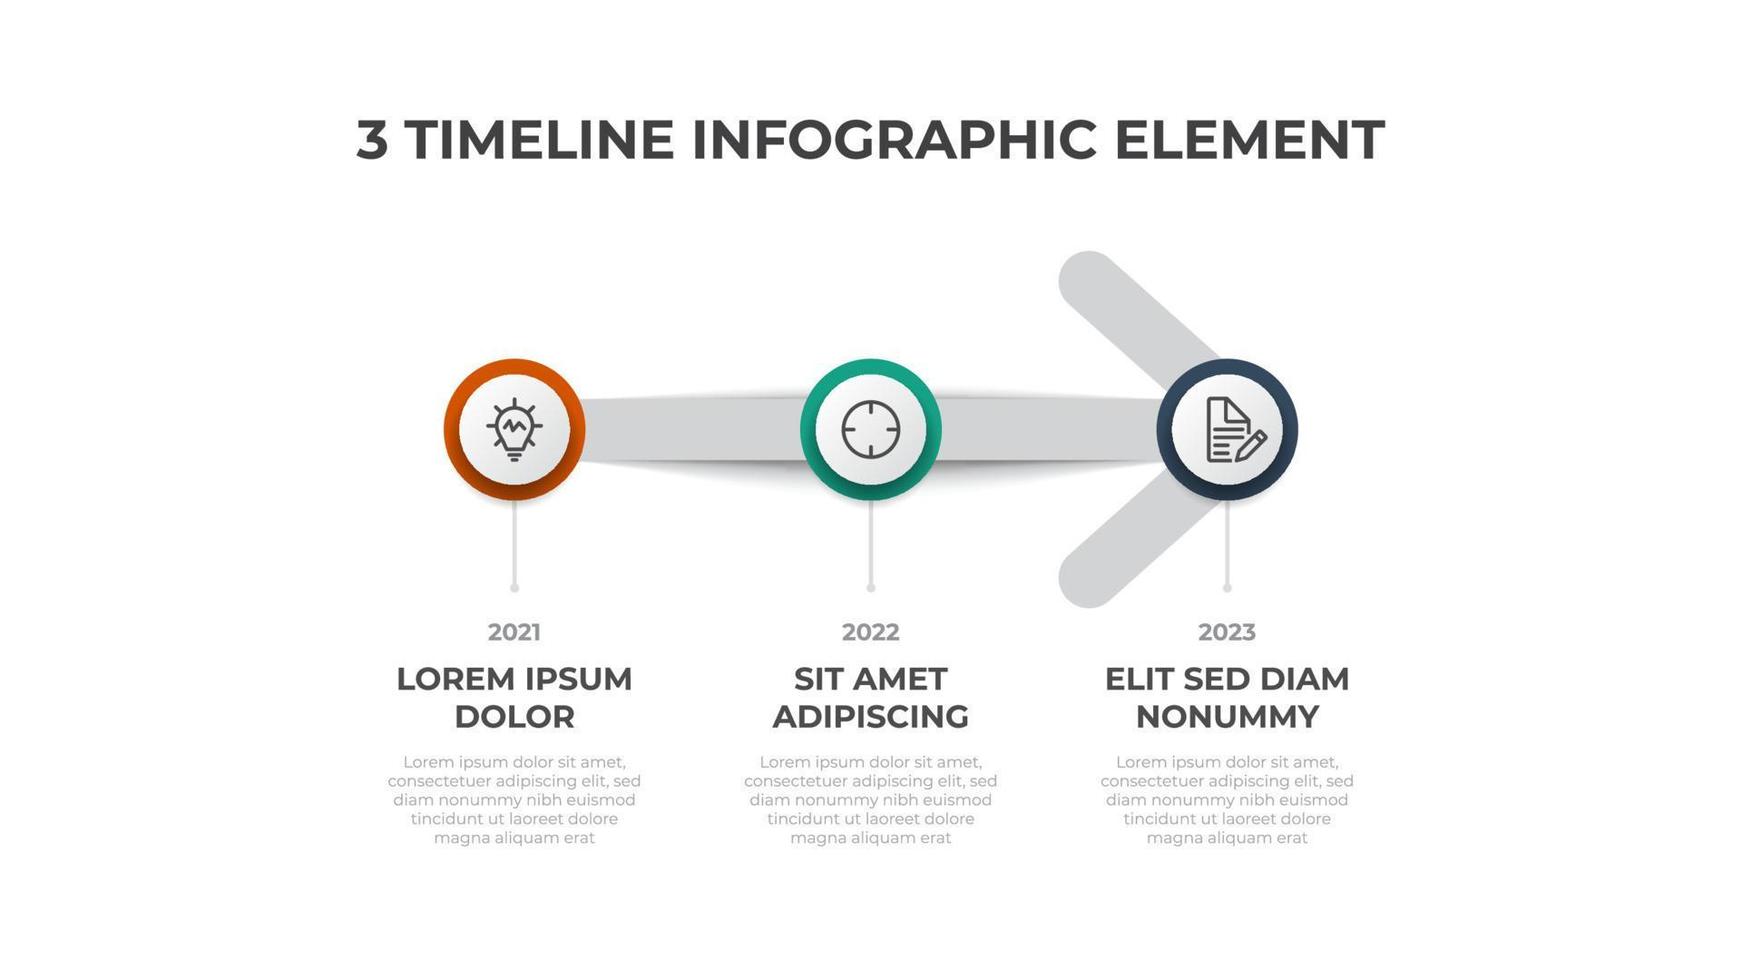 el vector de elementos infográficos con 3 opciones, lista y flecha, puede usarse para línea de tiempo, flujo de trabajo, diagrama de proceso, presentación, etc.